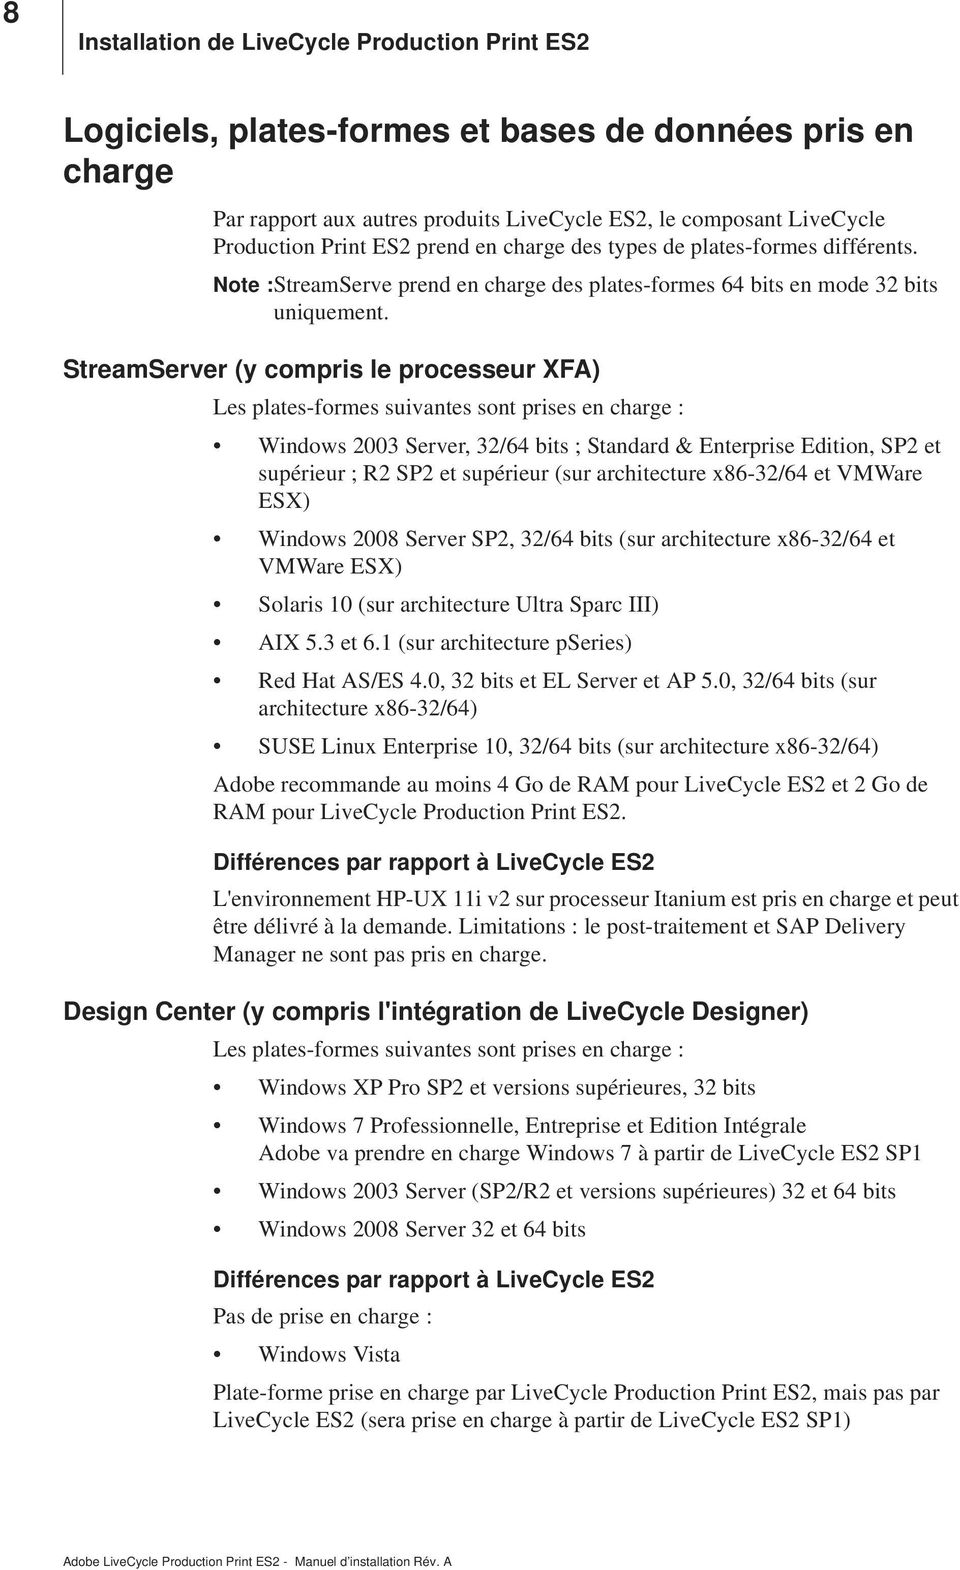 StreamServer (y compris le processeur XFA) Les plates-formes suivantes sont prises en charge : Windows 2003 Server, 32/64 bits ; Standard & Enterprise Edition, SP2 et supérieur ; R2 SP2 et supérieur